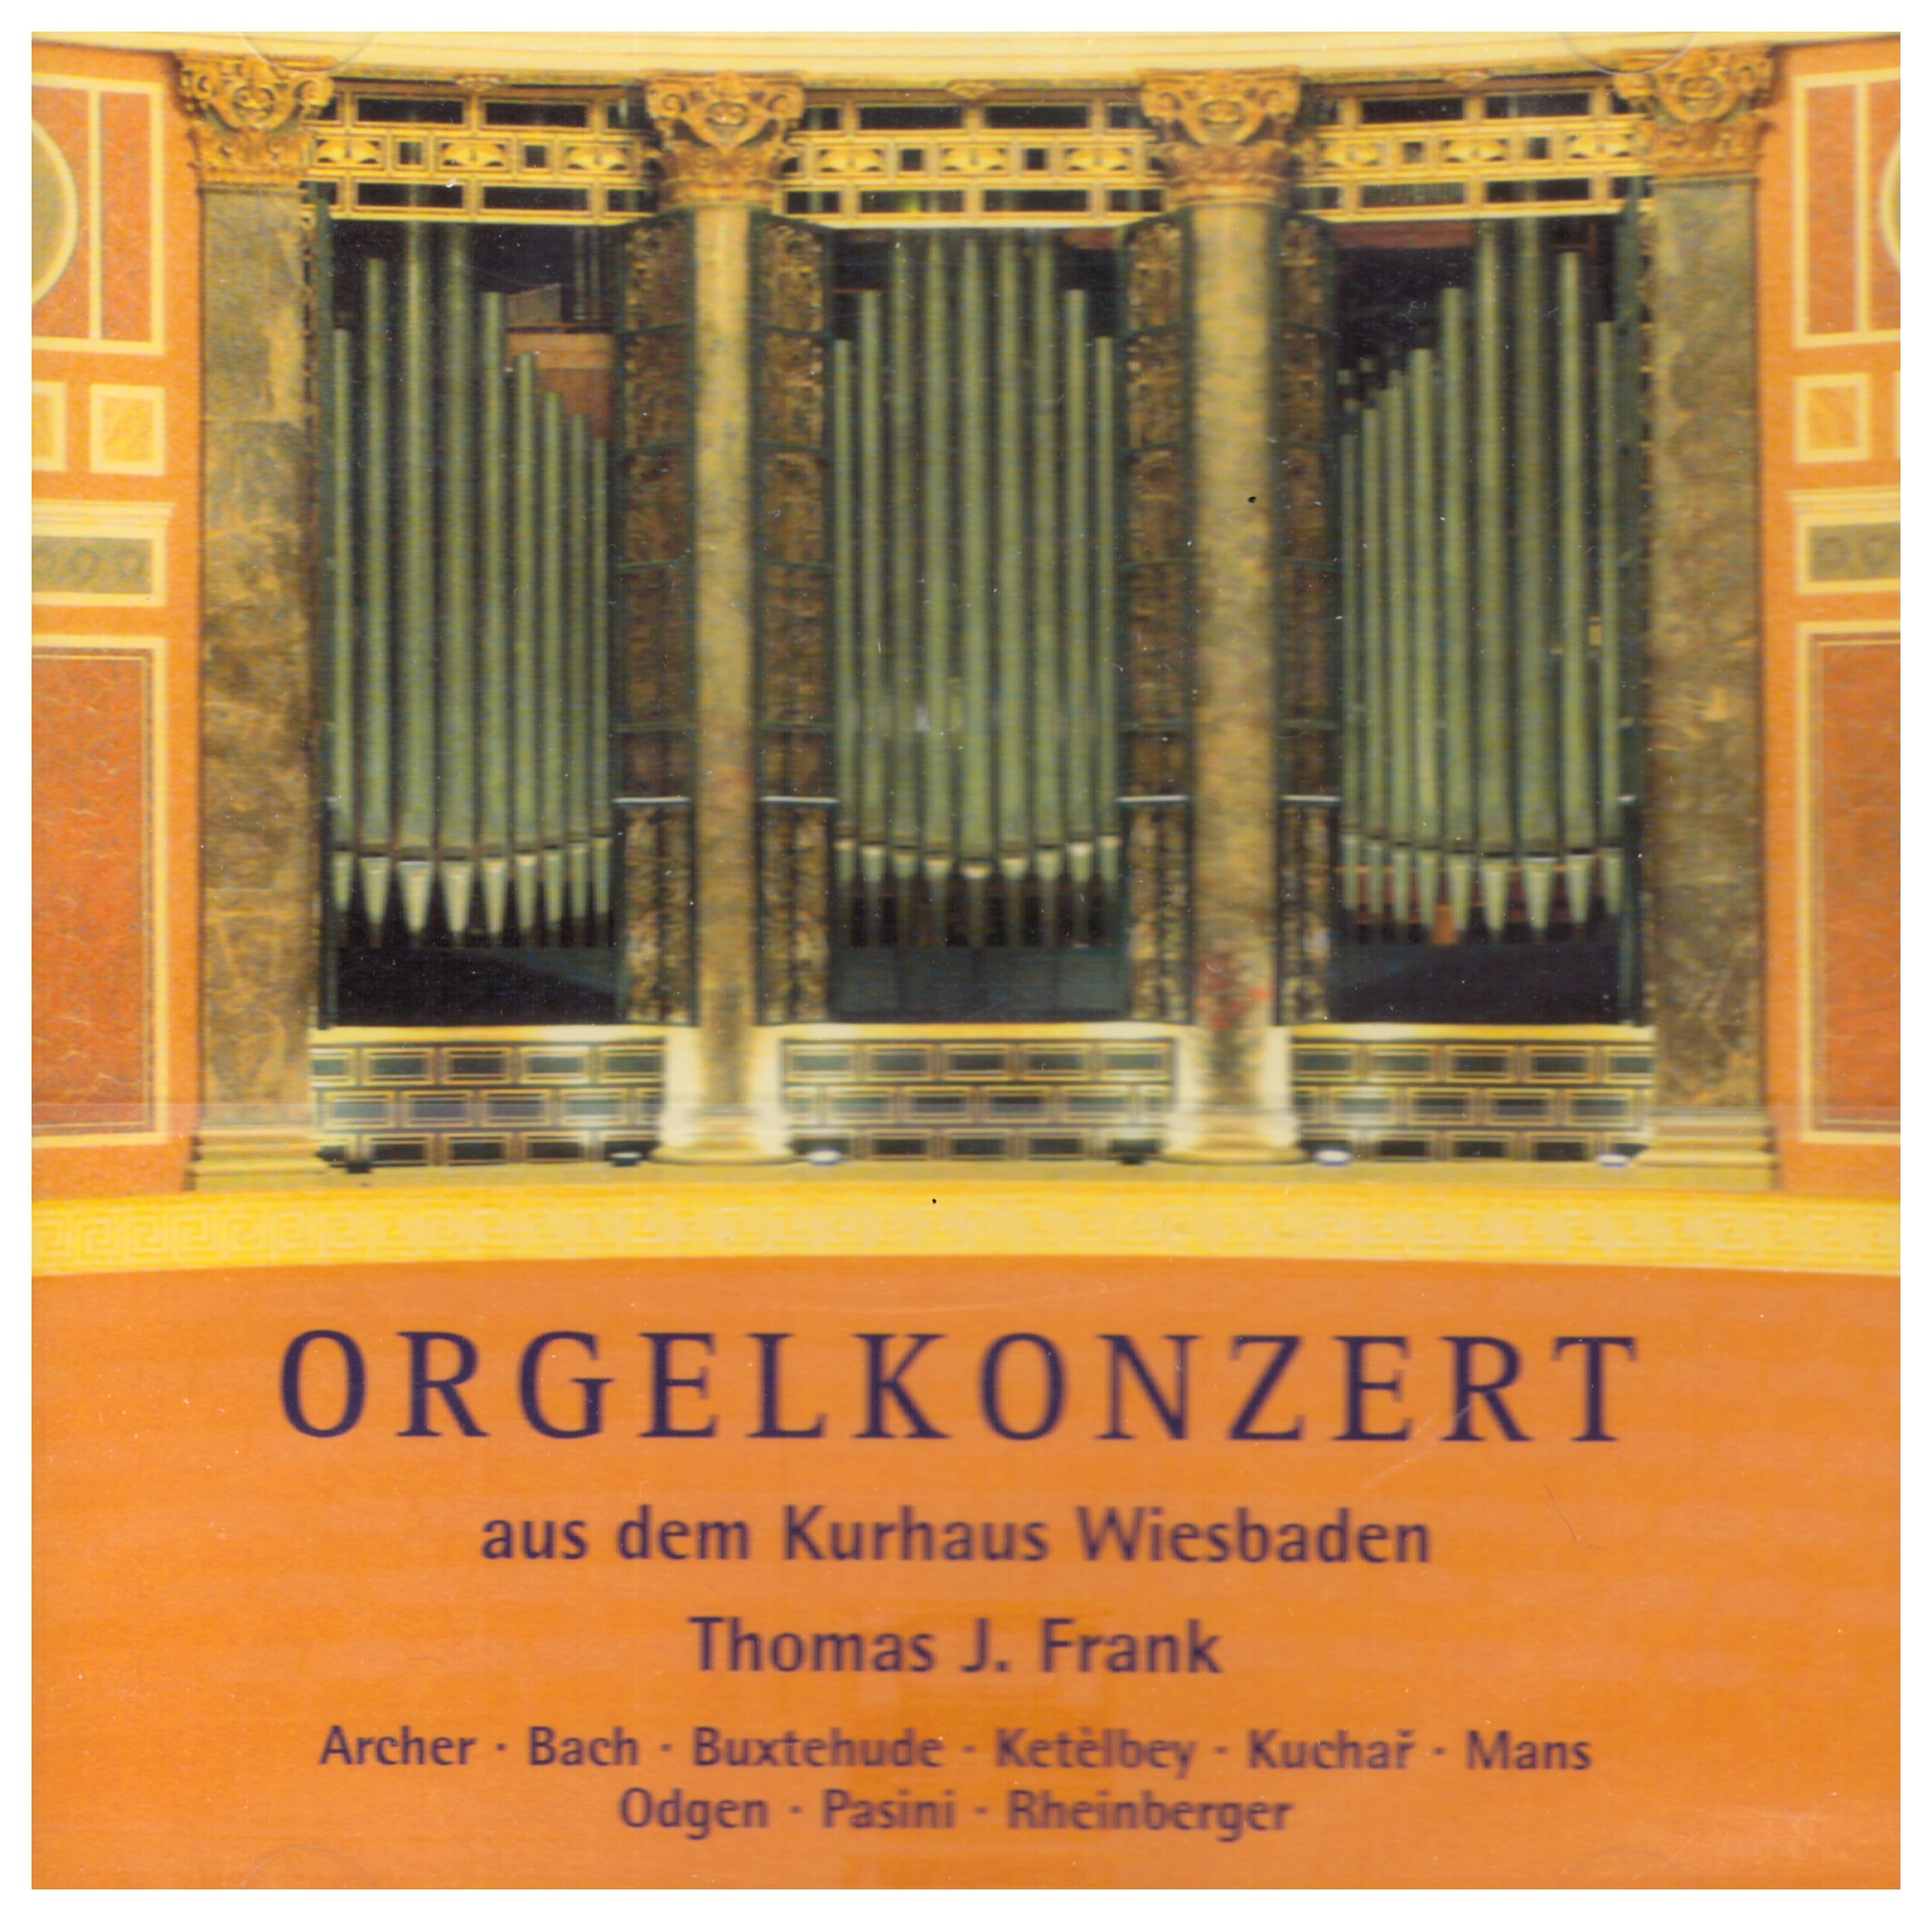 Orgelkonzert aus dem Kurhaus Wiesbaden